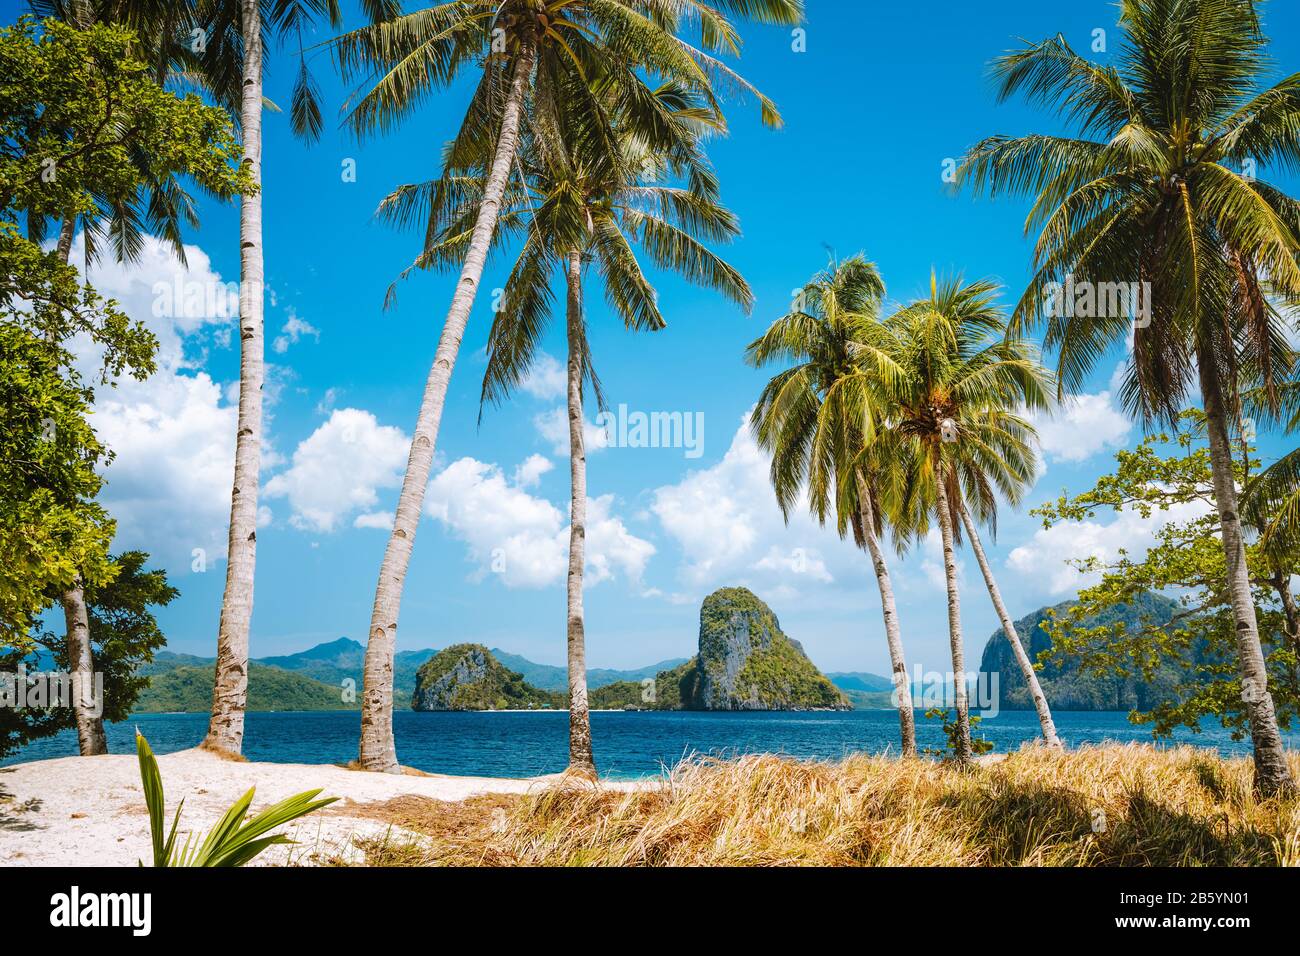 Feriensaison. Palawan berühmteste Touristenattraktionen. Palmen und einsames Insel-Hopping-Ausflugsboot am Ipil Strand des tropischen Pinagbuyutan, P Stockfoto